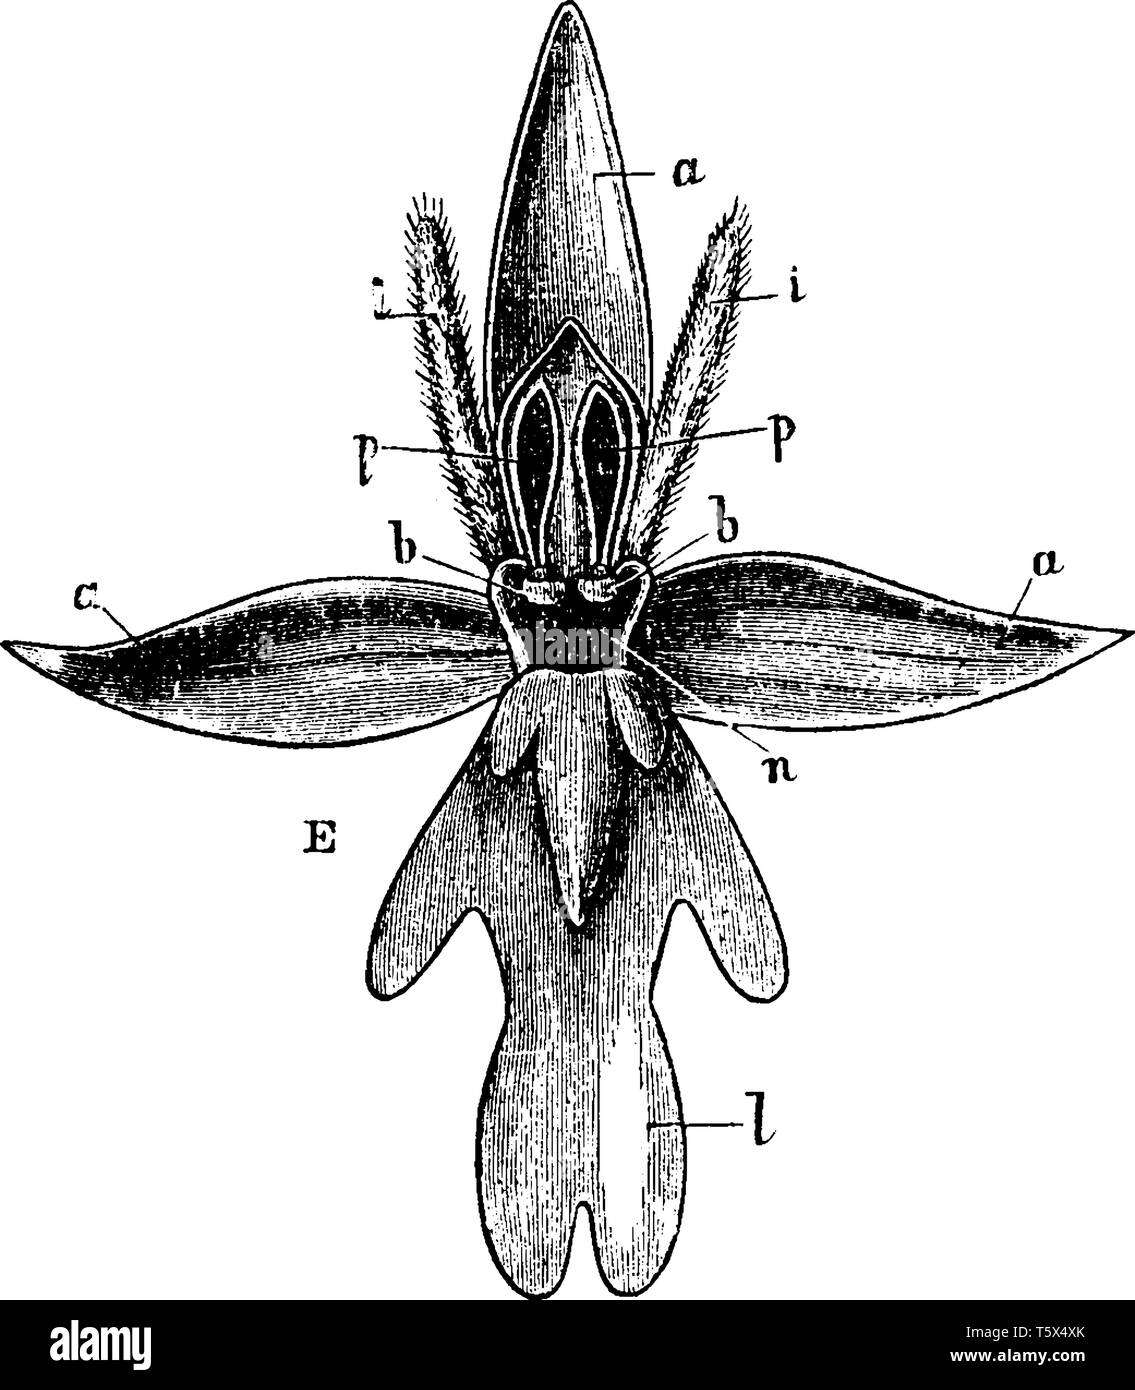 Fly Orchid est une herbacée vivace et ses fleurs sont présentés comme une mouche c'est pourquoi il est appelé comme l'Orchidée mouche, vintage dessin ou gravure illustra Illustration de Vecteur